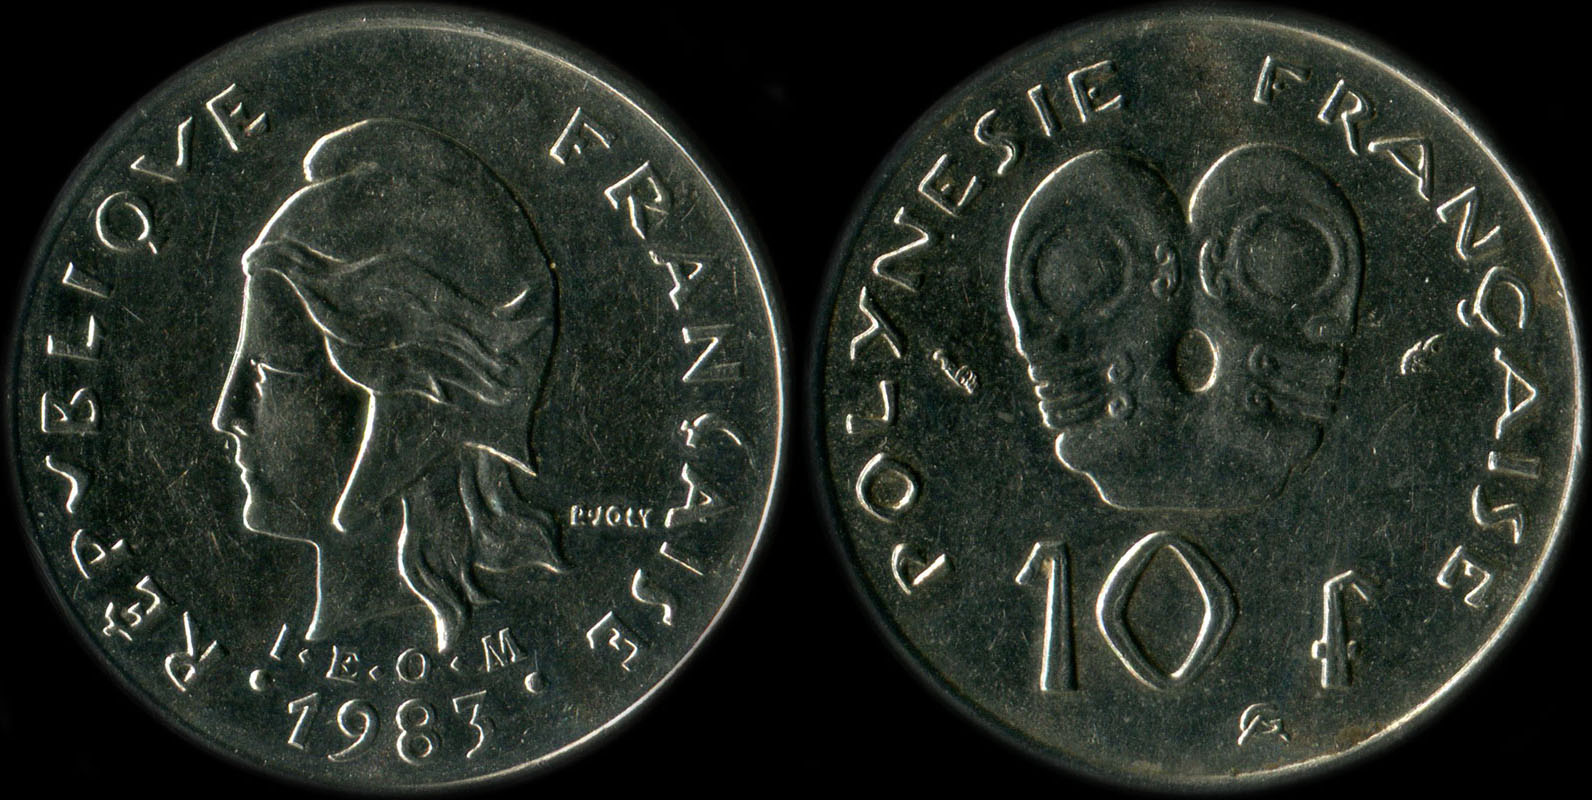 Pice de 10 francs 1983  - I.E.O.M. Polynsie franaise